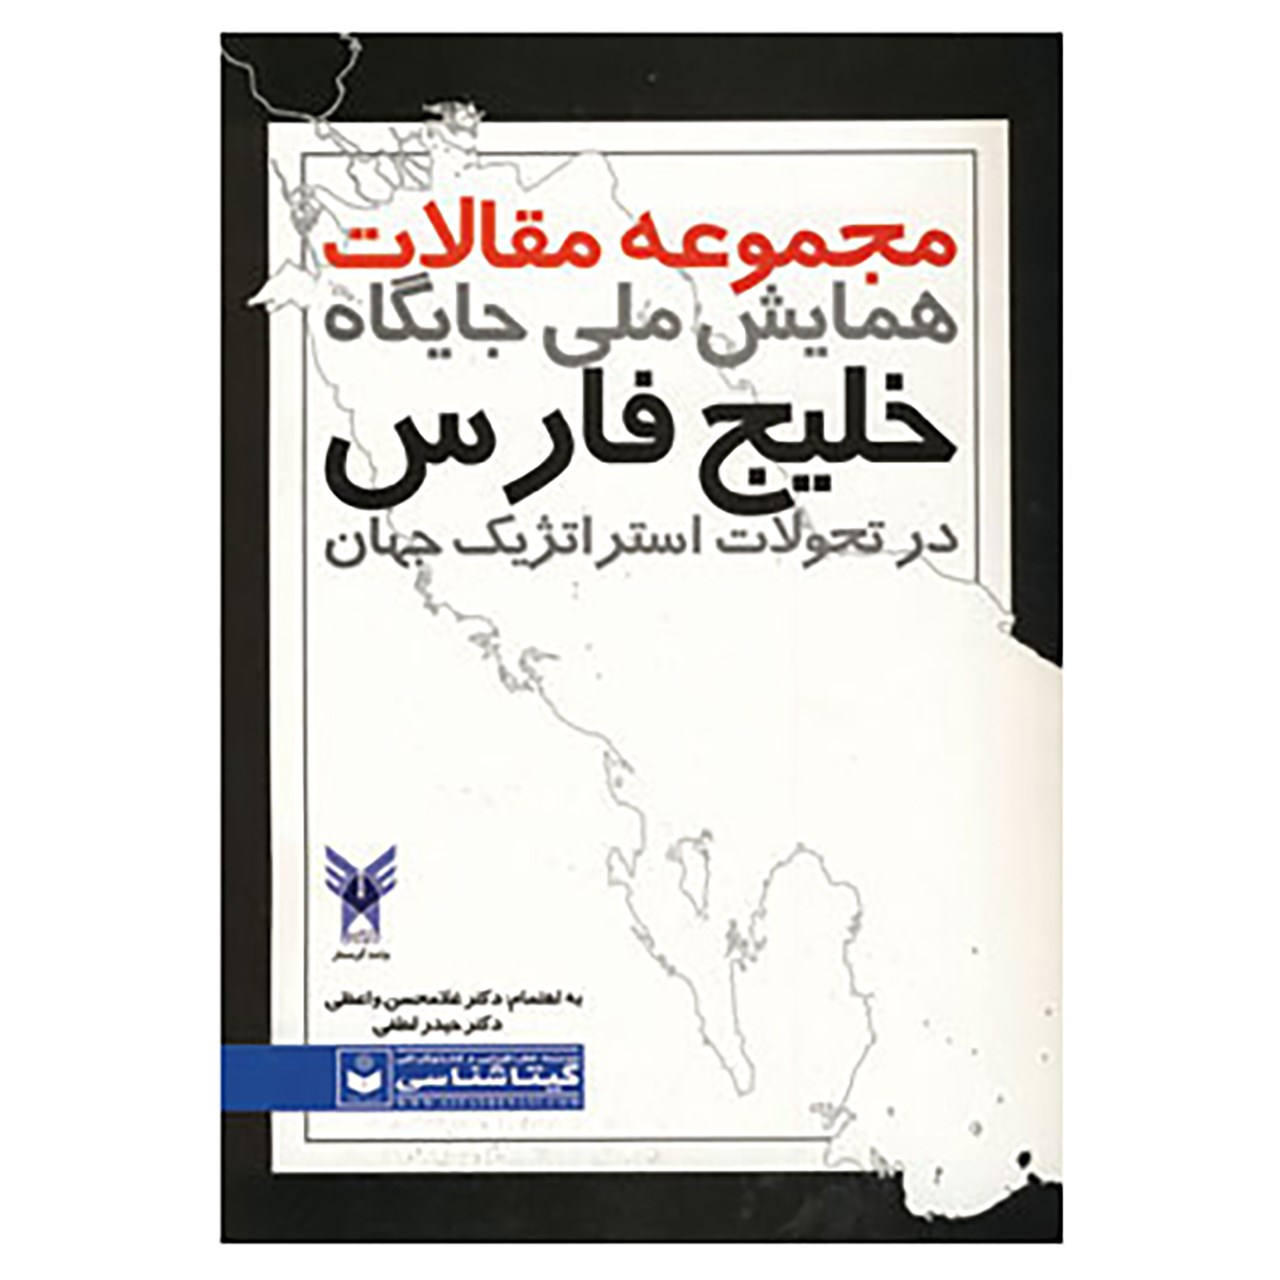 کتاب مجموعه مقالات همایش ملی جایگاه خلیج فارس در تحولات استراتژیک جهان کد 489 اثر غلامحسین واعظی،حیدر لطفی